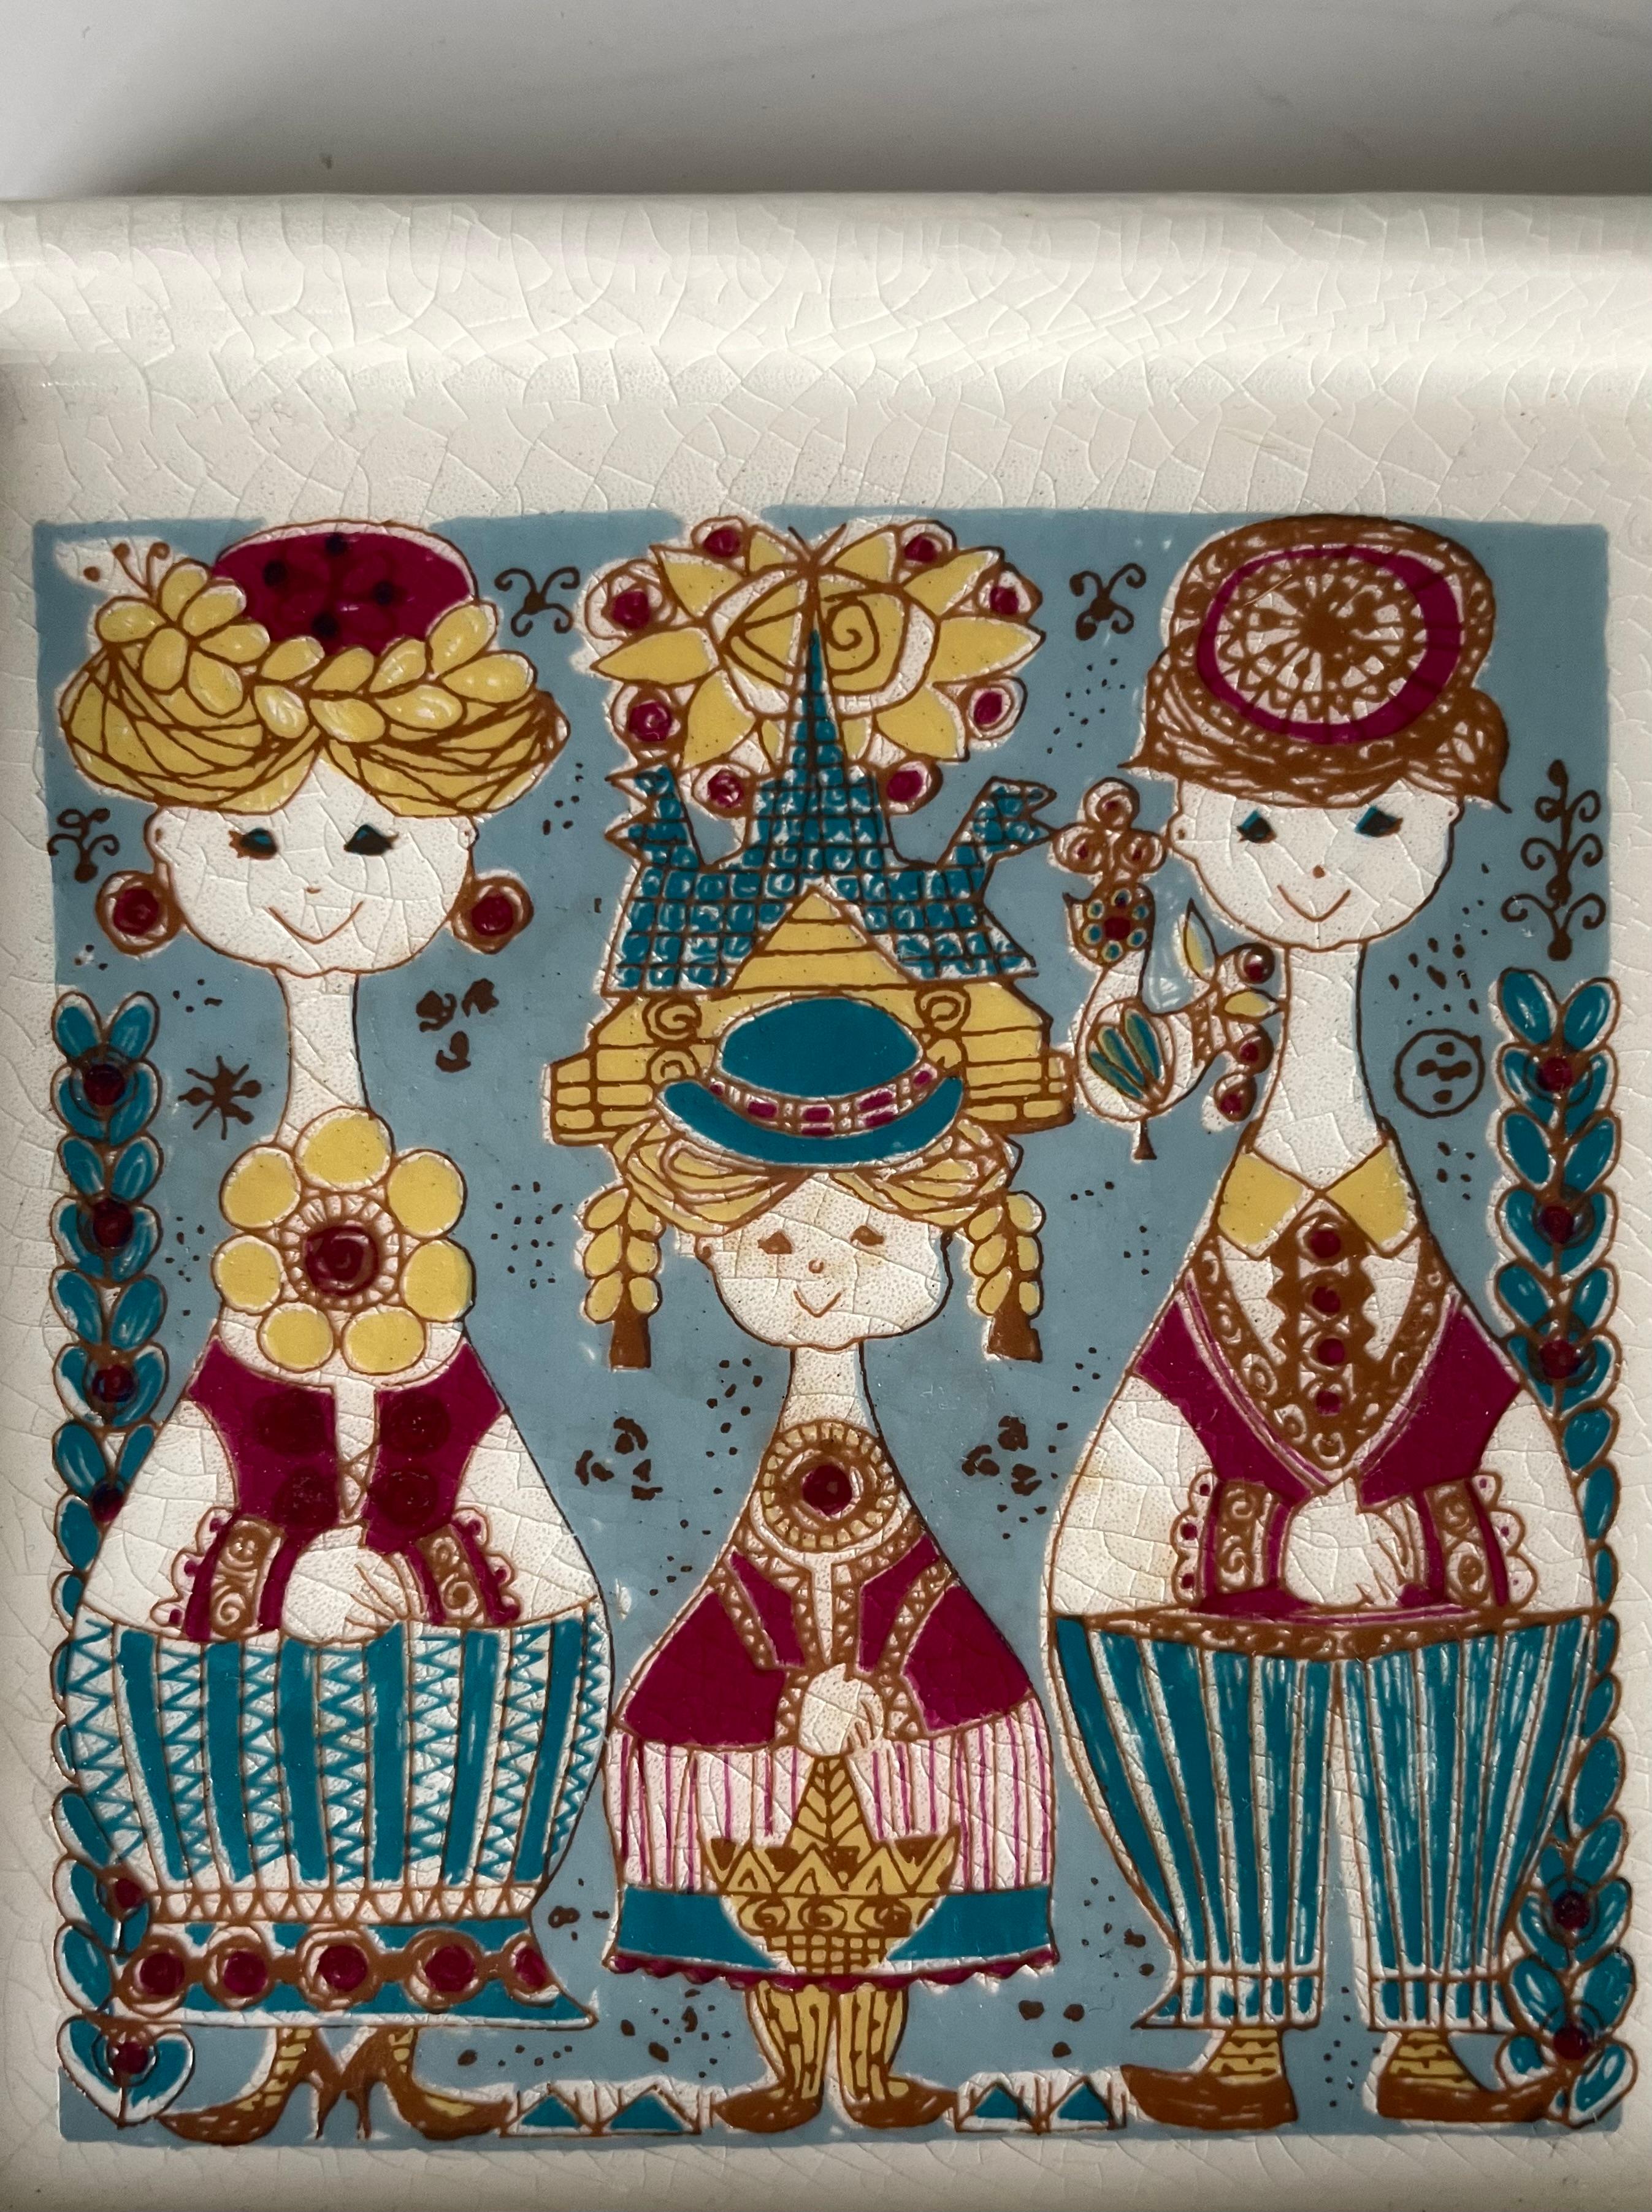 Quadratische, mehrfarbige, dekorative Videotasche, entworfen von Inger Waage (1923-1995) für Stavangerflint in den späten 1950er bis frühen 1960er Jahren. Drei menschliche Figuren stehen lächelnd in farbenfroher, gemusterter Kleidung, umgeben von